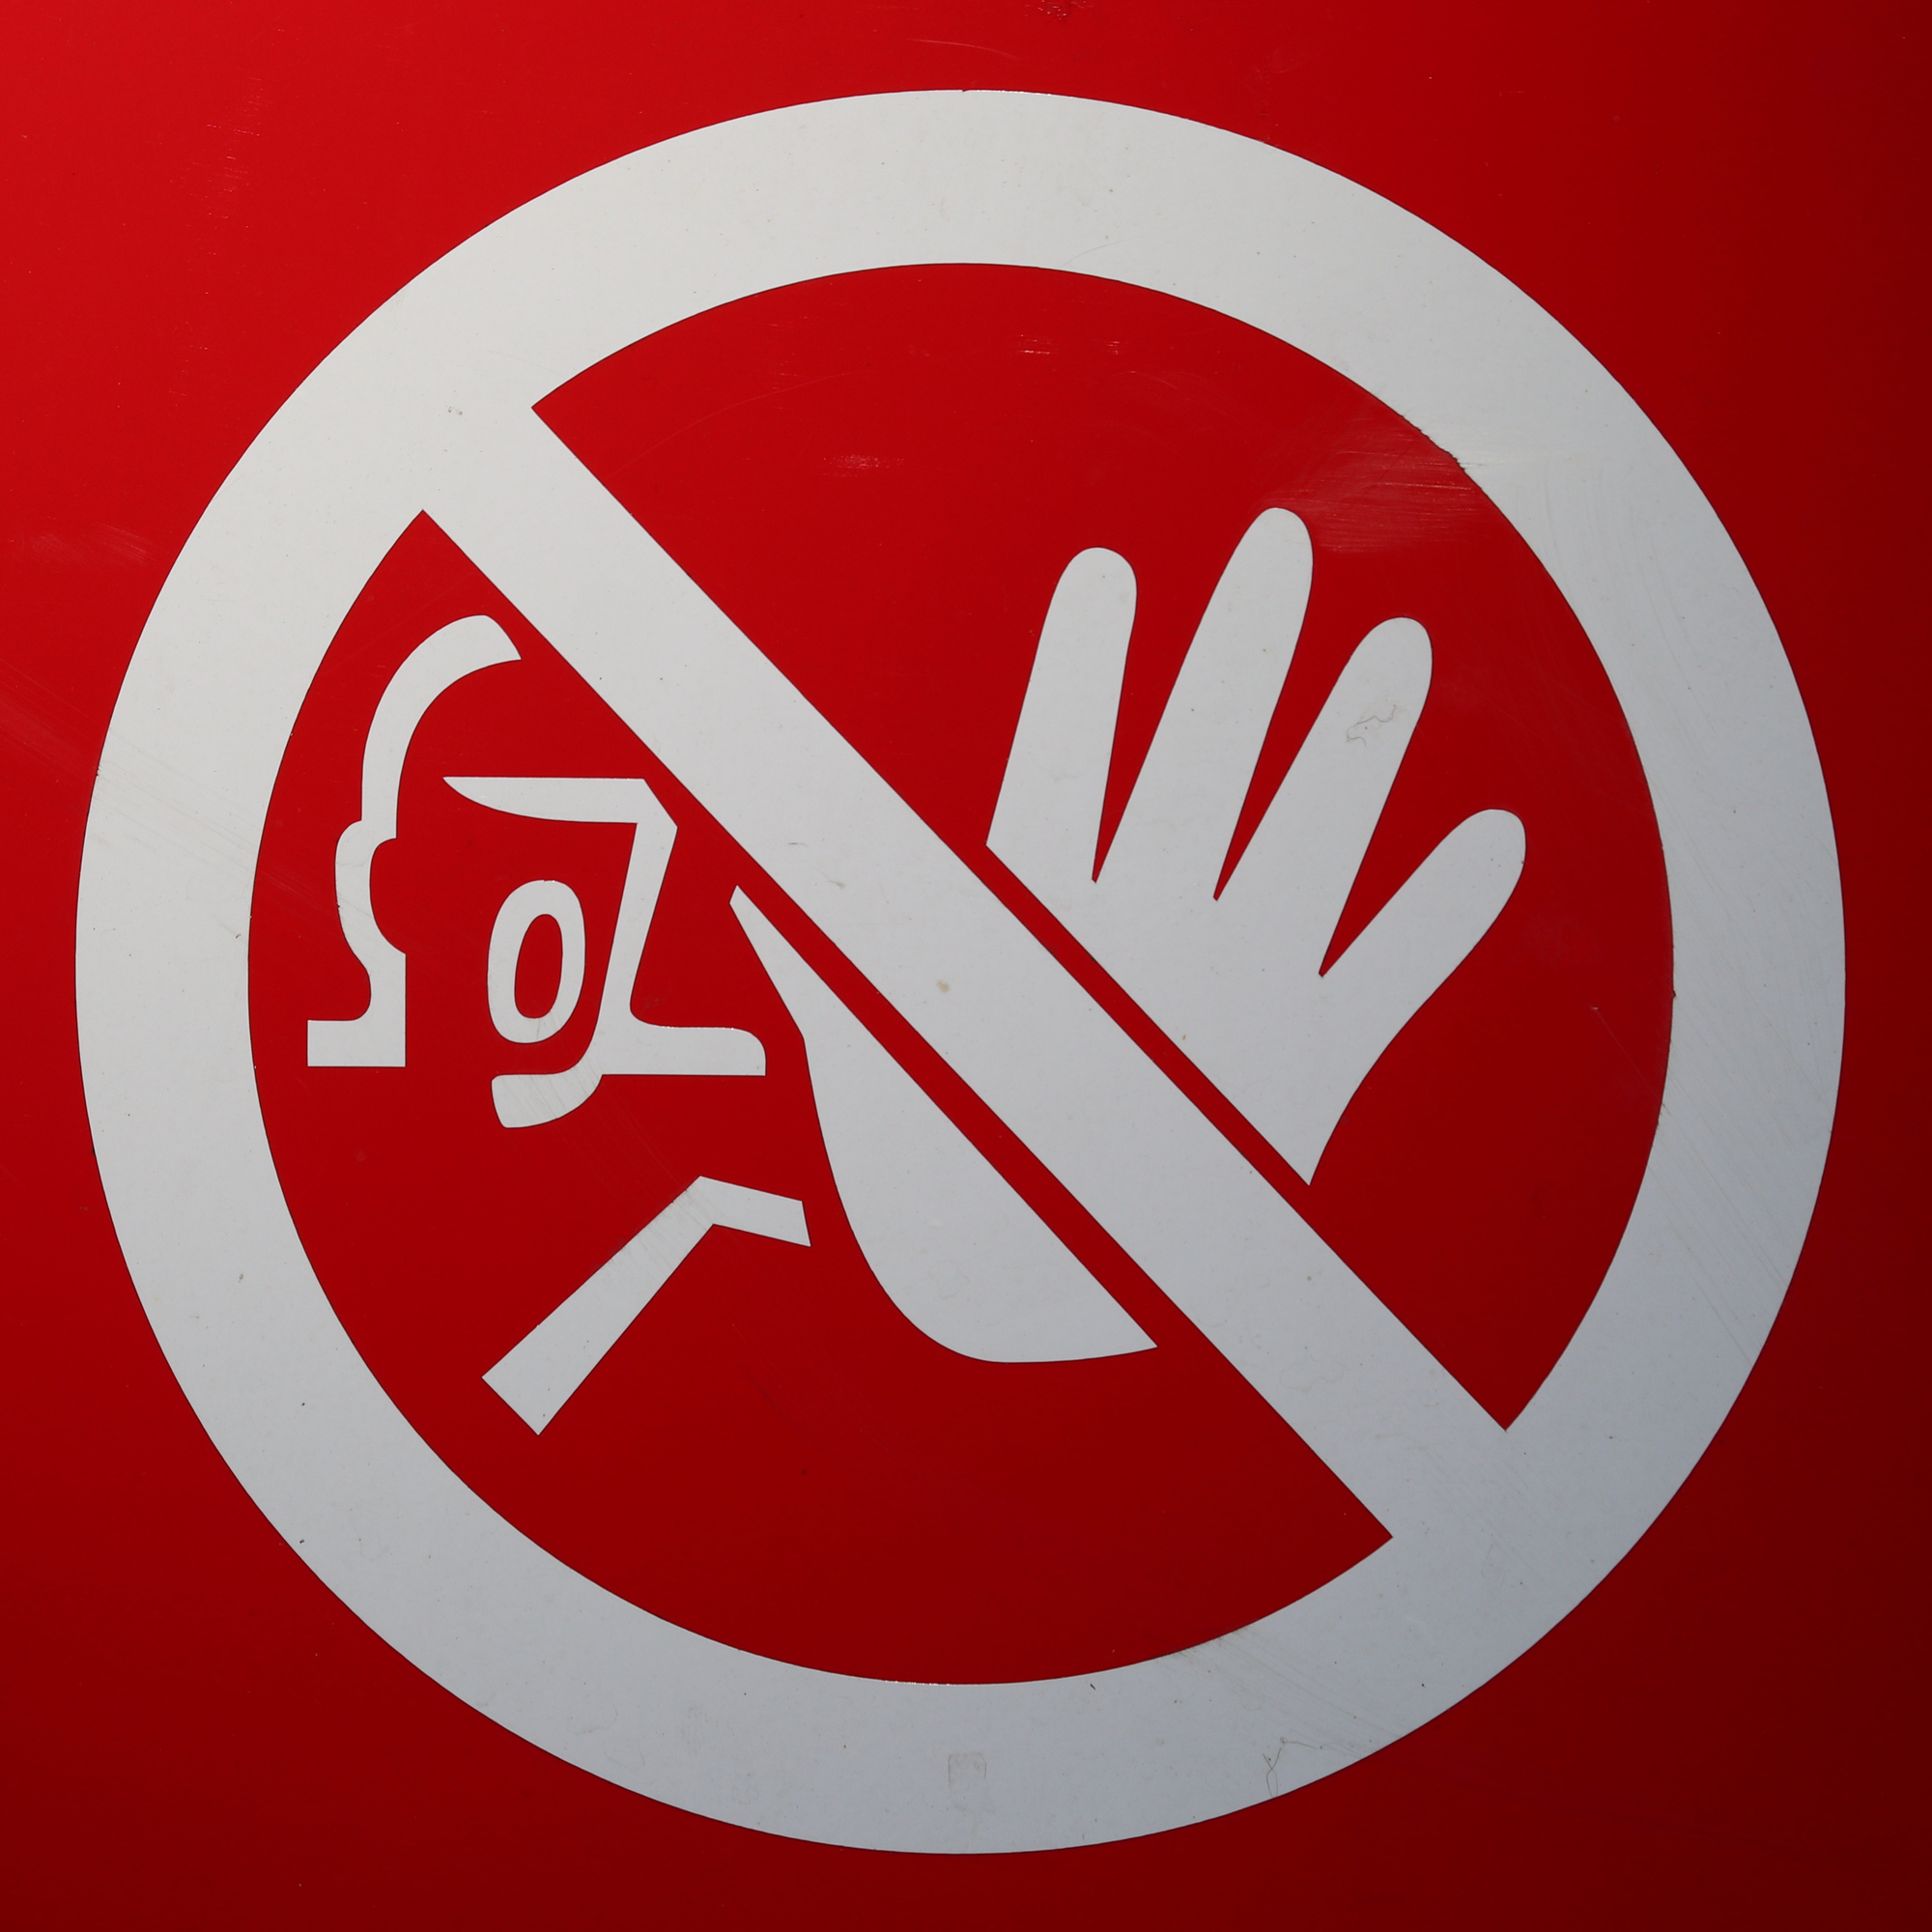 Foto: Stopp-Schild mit abwehrender Hand